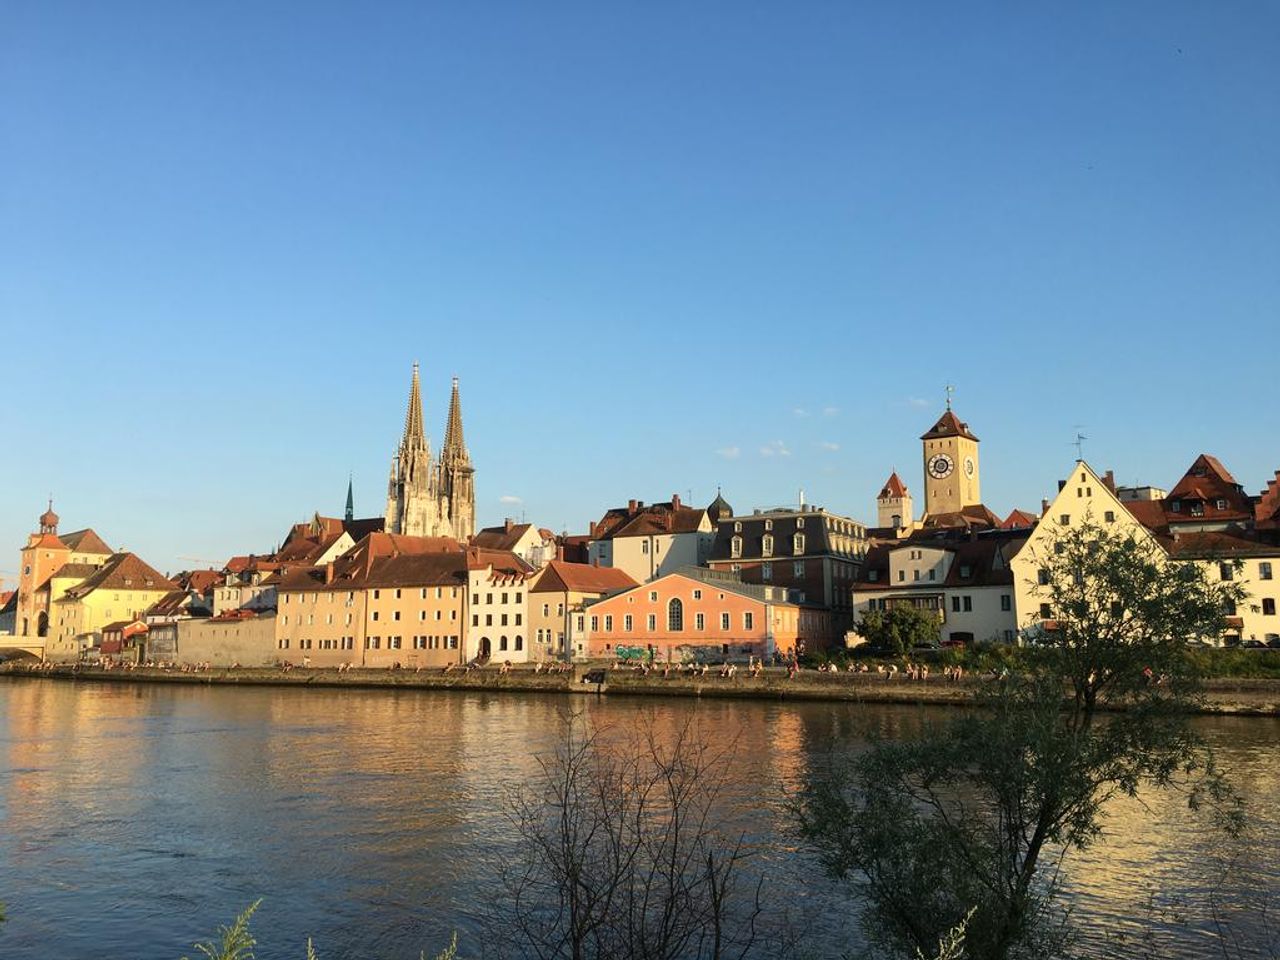 Picknicken im wunderschönen Regensburg - 4 Tage